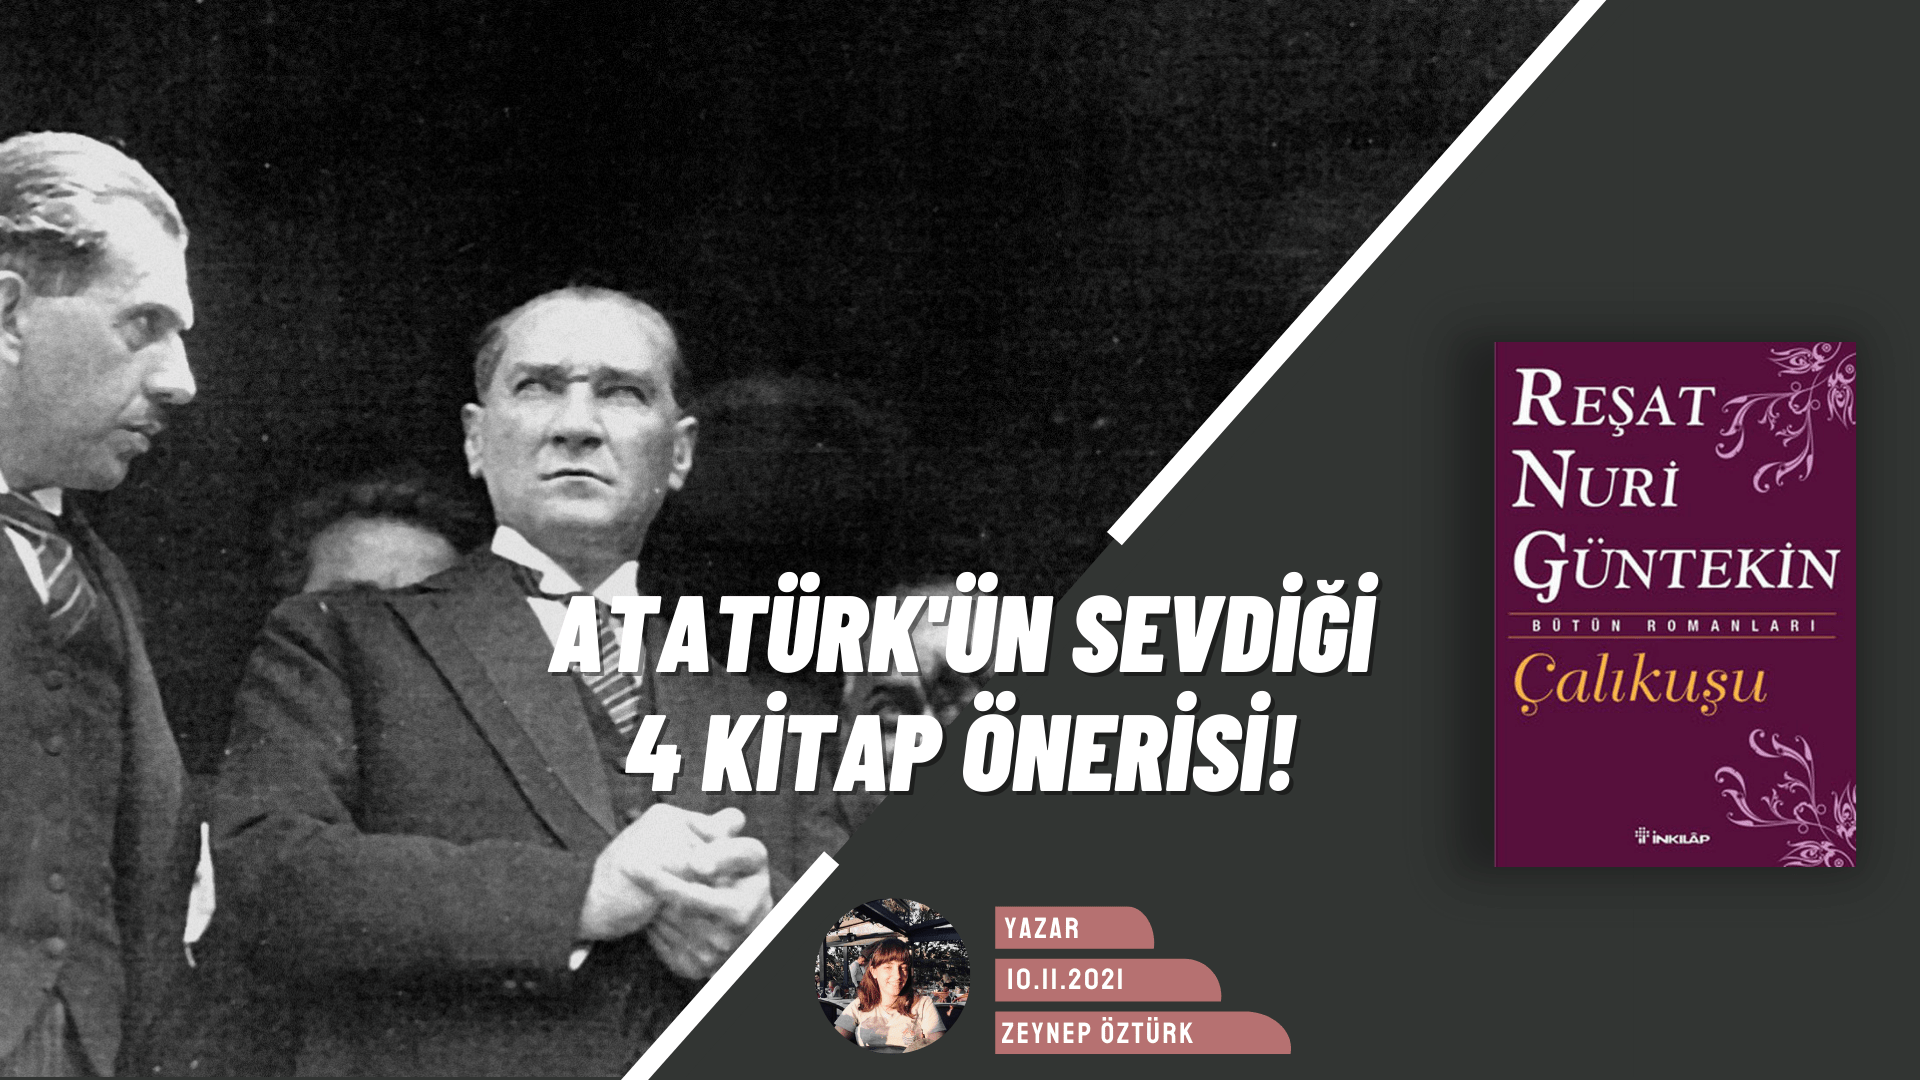 Minnetle Anıyoruz: Atatürk’ün Başucu Kitapları